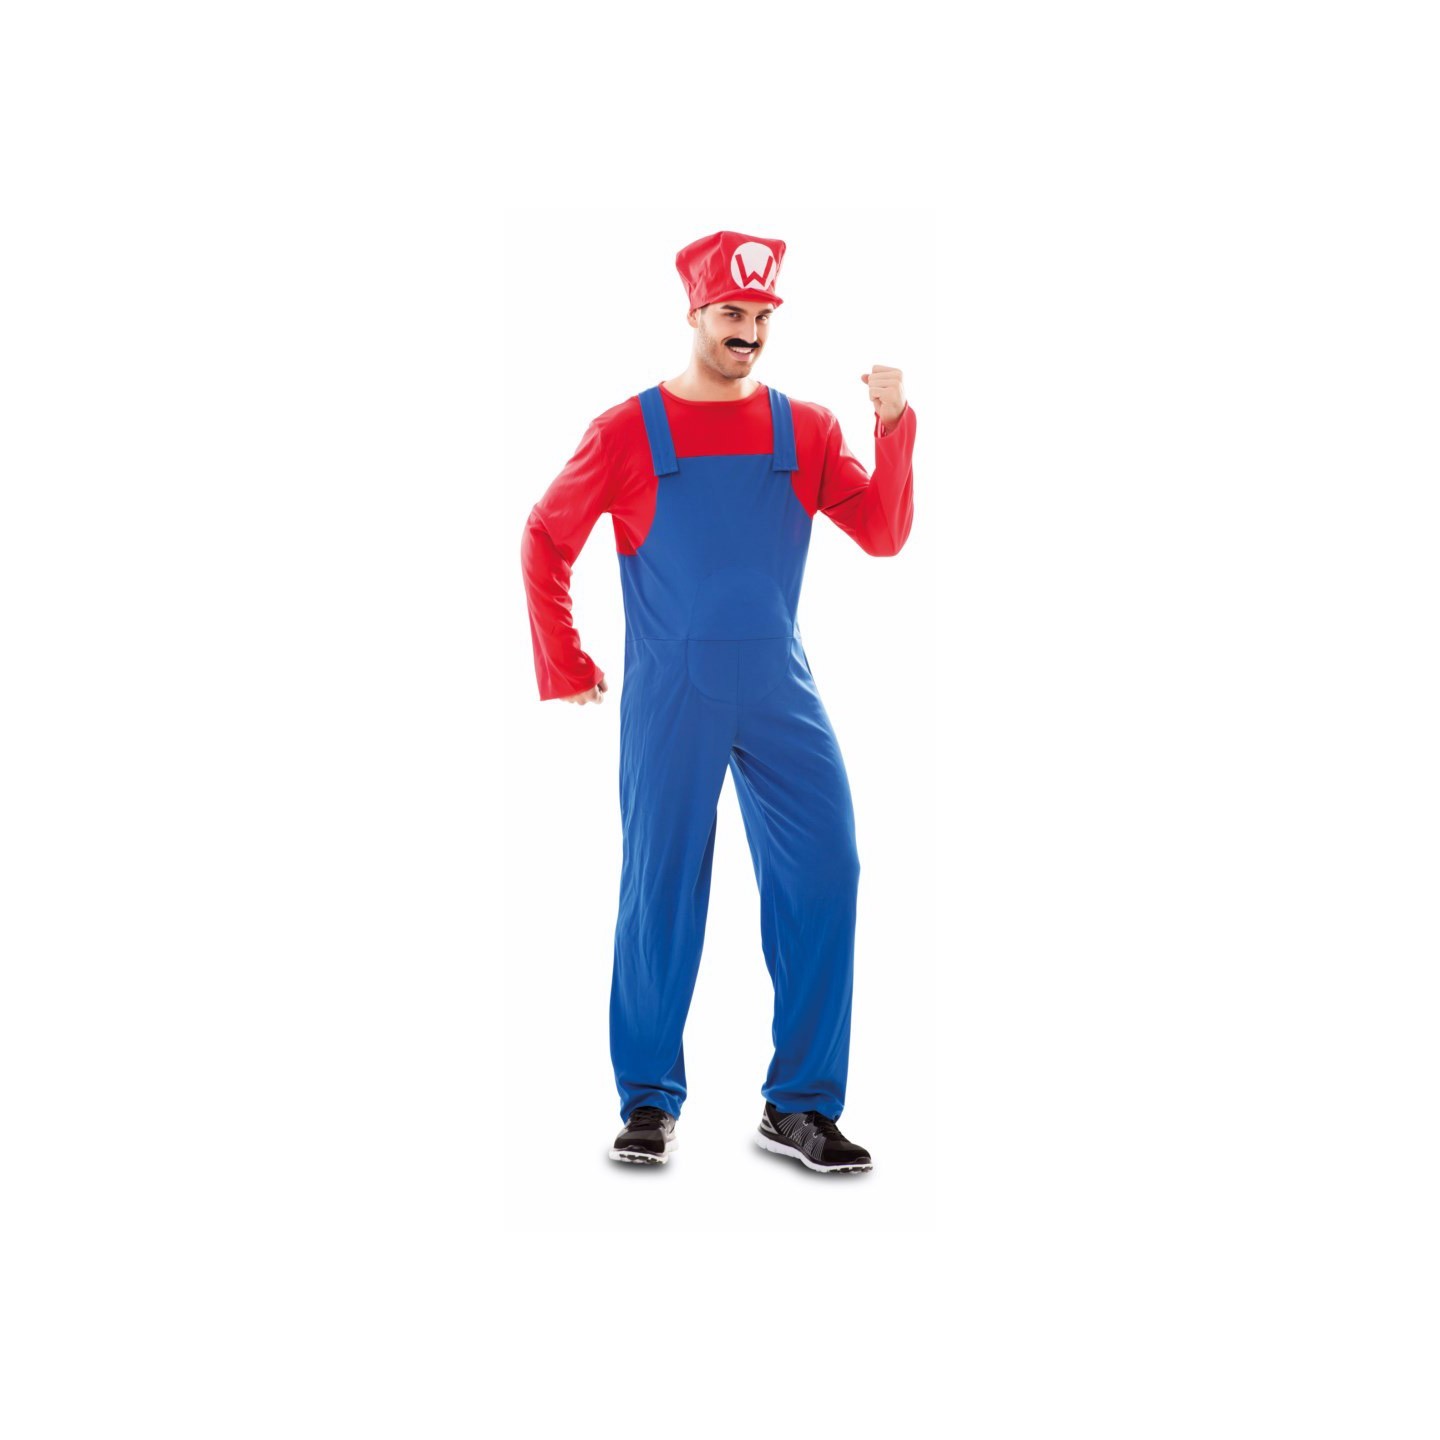 Is aan het huilen Televisie kijken Onschuldig Super Mario kostuum heren| Jokershop.be - Verkleedwinlkel